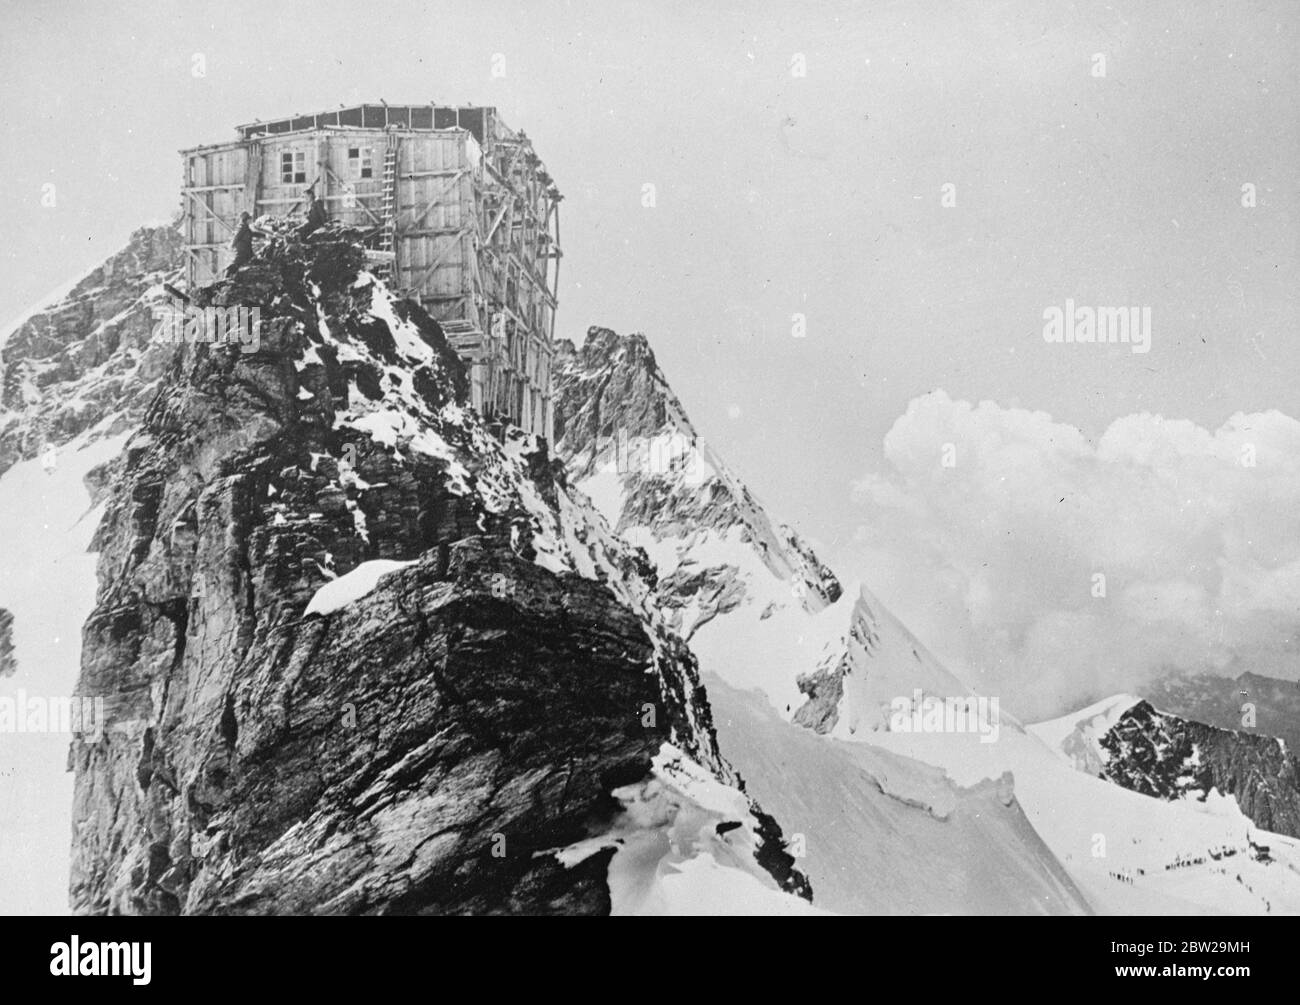 La station de recherche la plus élevée d'Europe est proche de la fin. Perchée sur le pic accidenté du Sphinx, qui s'élève à près de 12,000 mètres de haut dans les Alpes suisses, la station de recherche la plus loftite d'Europe est sur le point d'être achevée. À la station, les scientifiques briseront les rigueurs du vent et du blizzard pour étudier les conditions météorologiques et atmosphériques à haute altitude. 18 octobre 1937 Banque D'Images